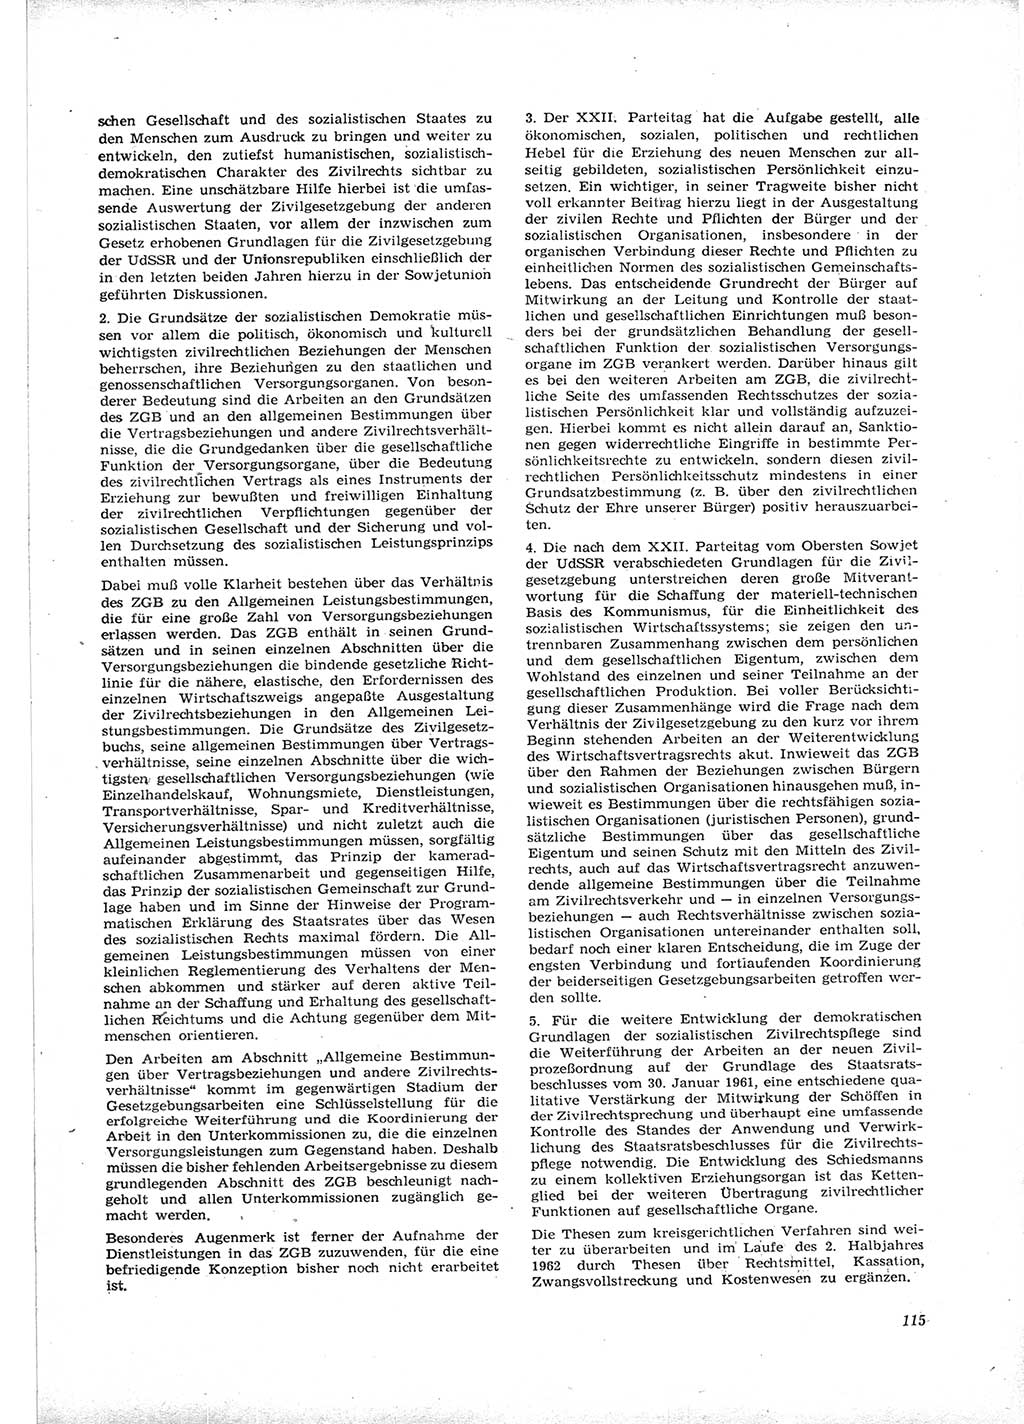 Neue Justiz (NJ), Zeitschrift für Recht und Rechtswissenschaft [Deutsche Demokratische Republik (DDR)], 16. Jahrgang 1962, Seite 115 (NJ DDR 1962, S. 115)